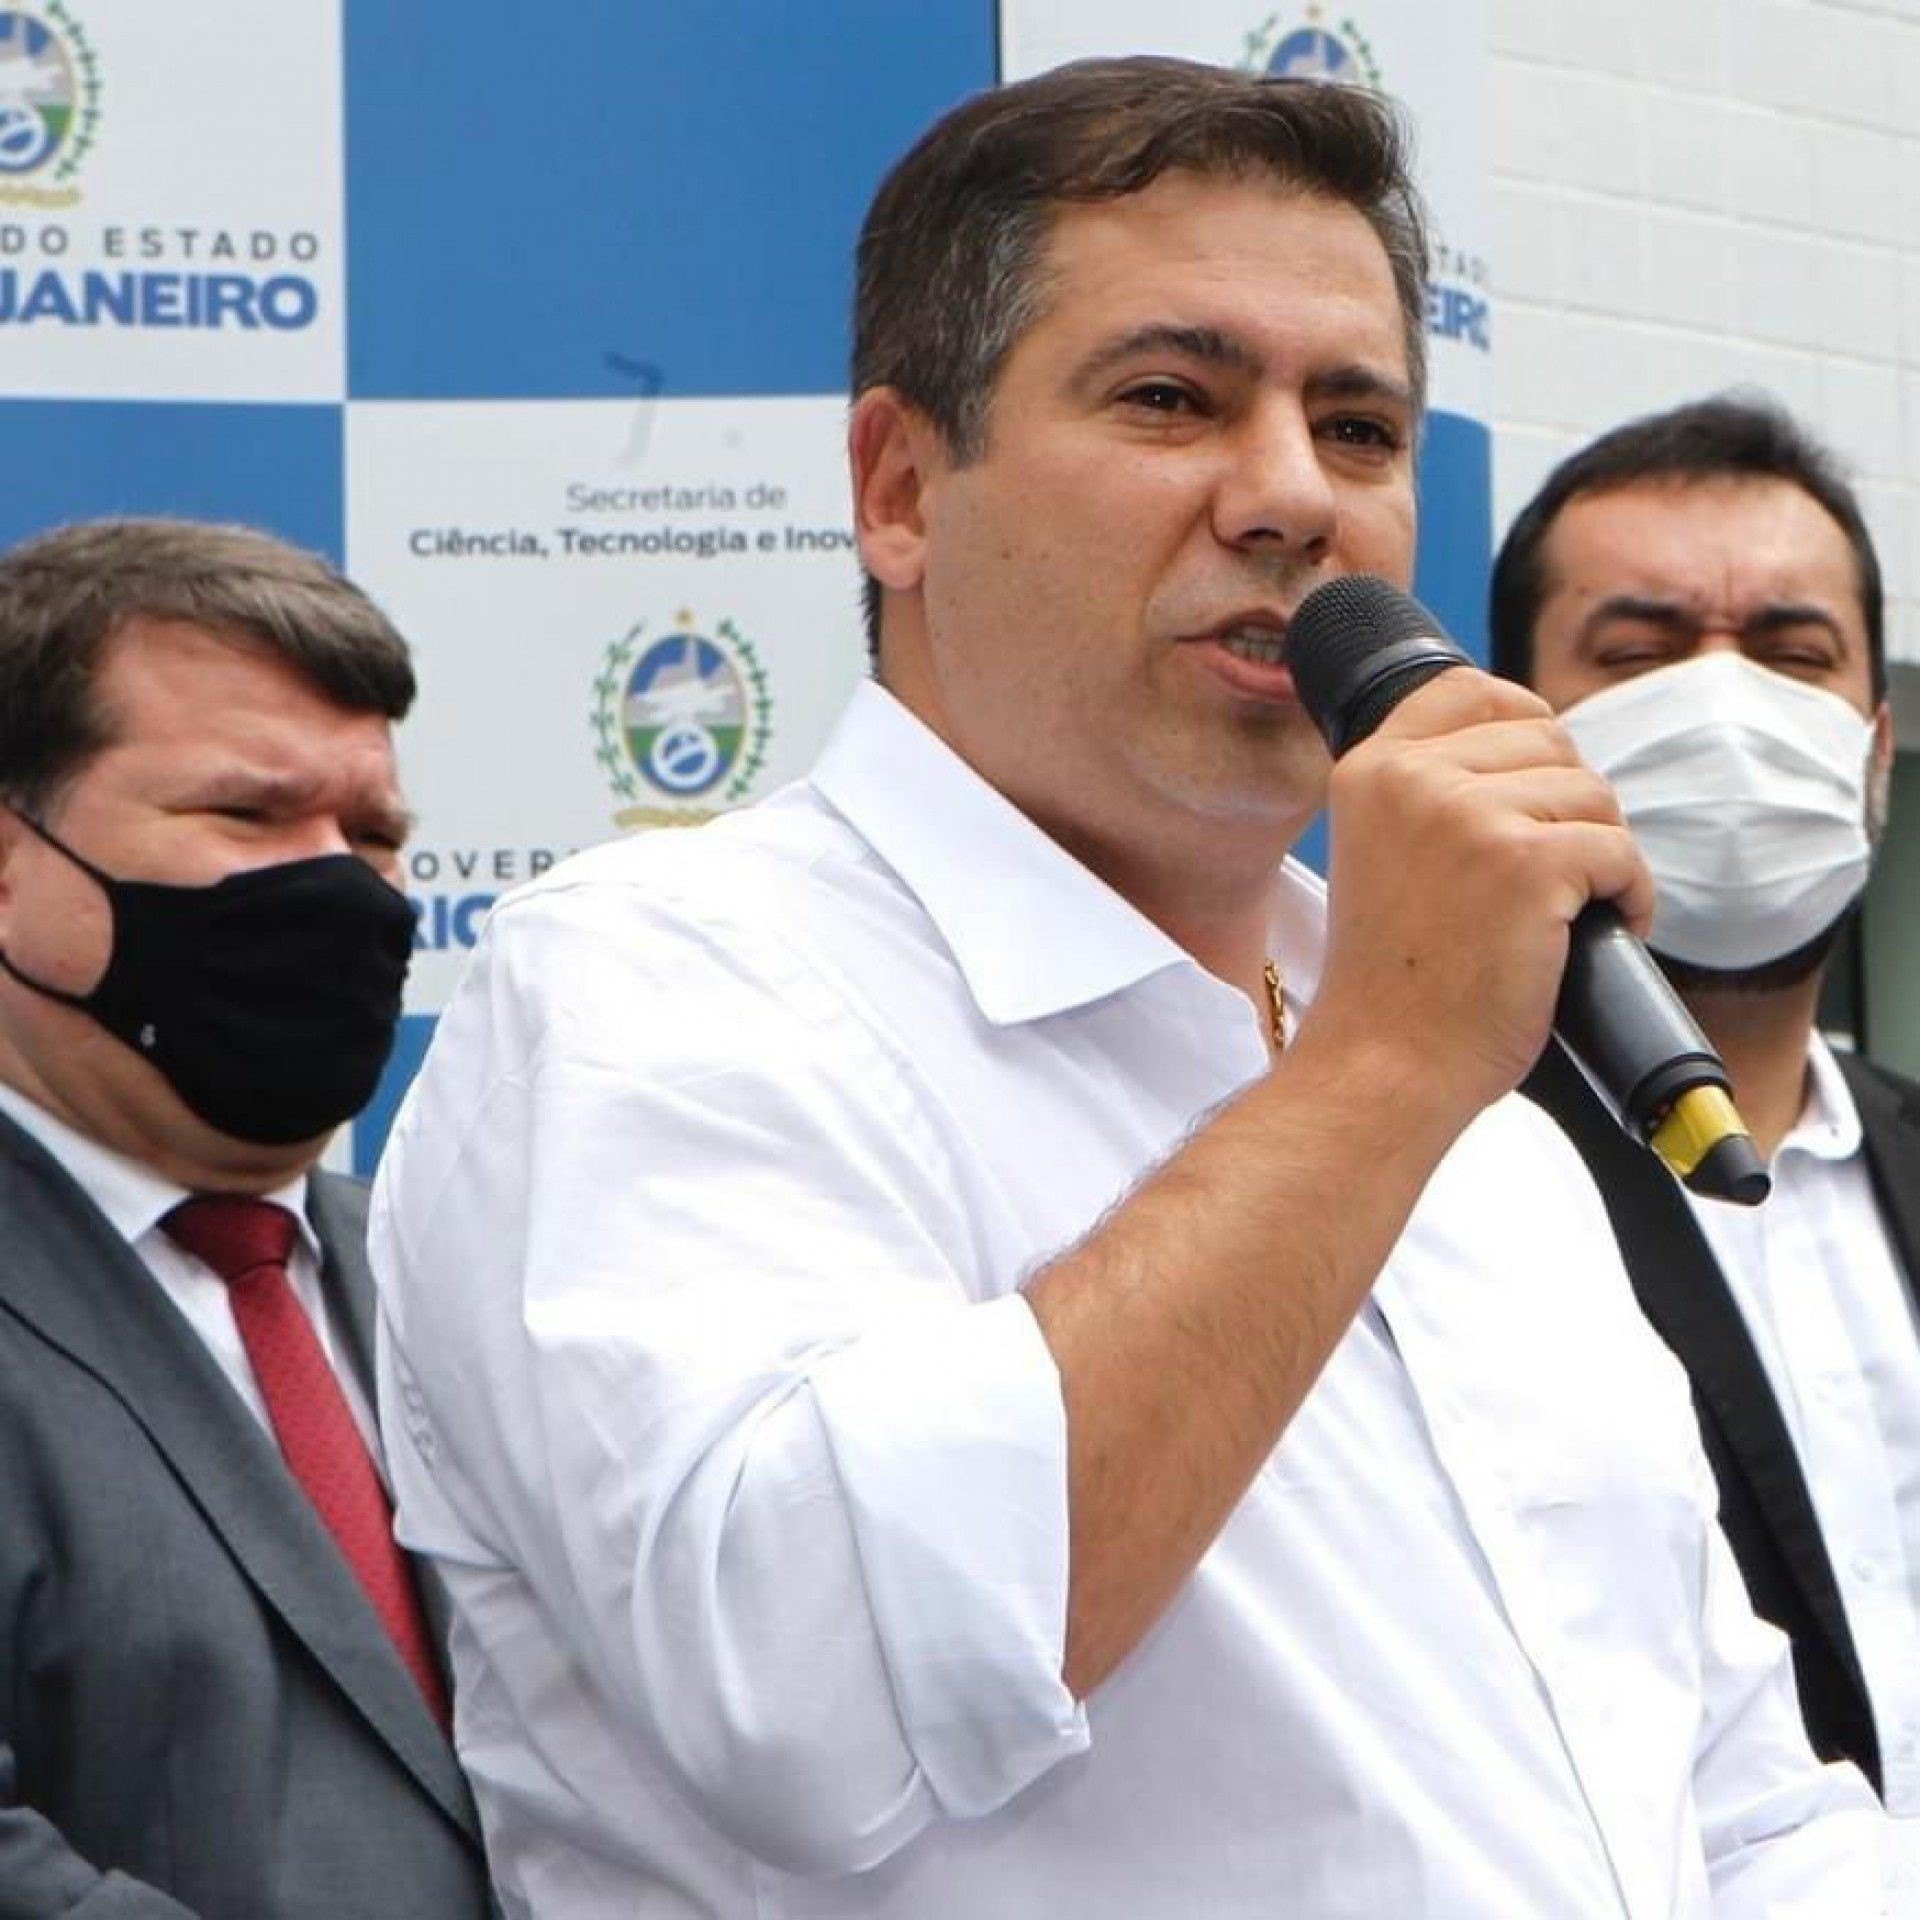 El ministro de Ciencia y Tecnología recibe al senador Flavio Bolsonaro |  Política de la Costa del Sol